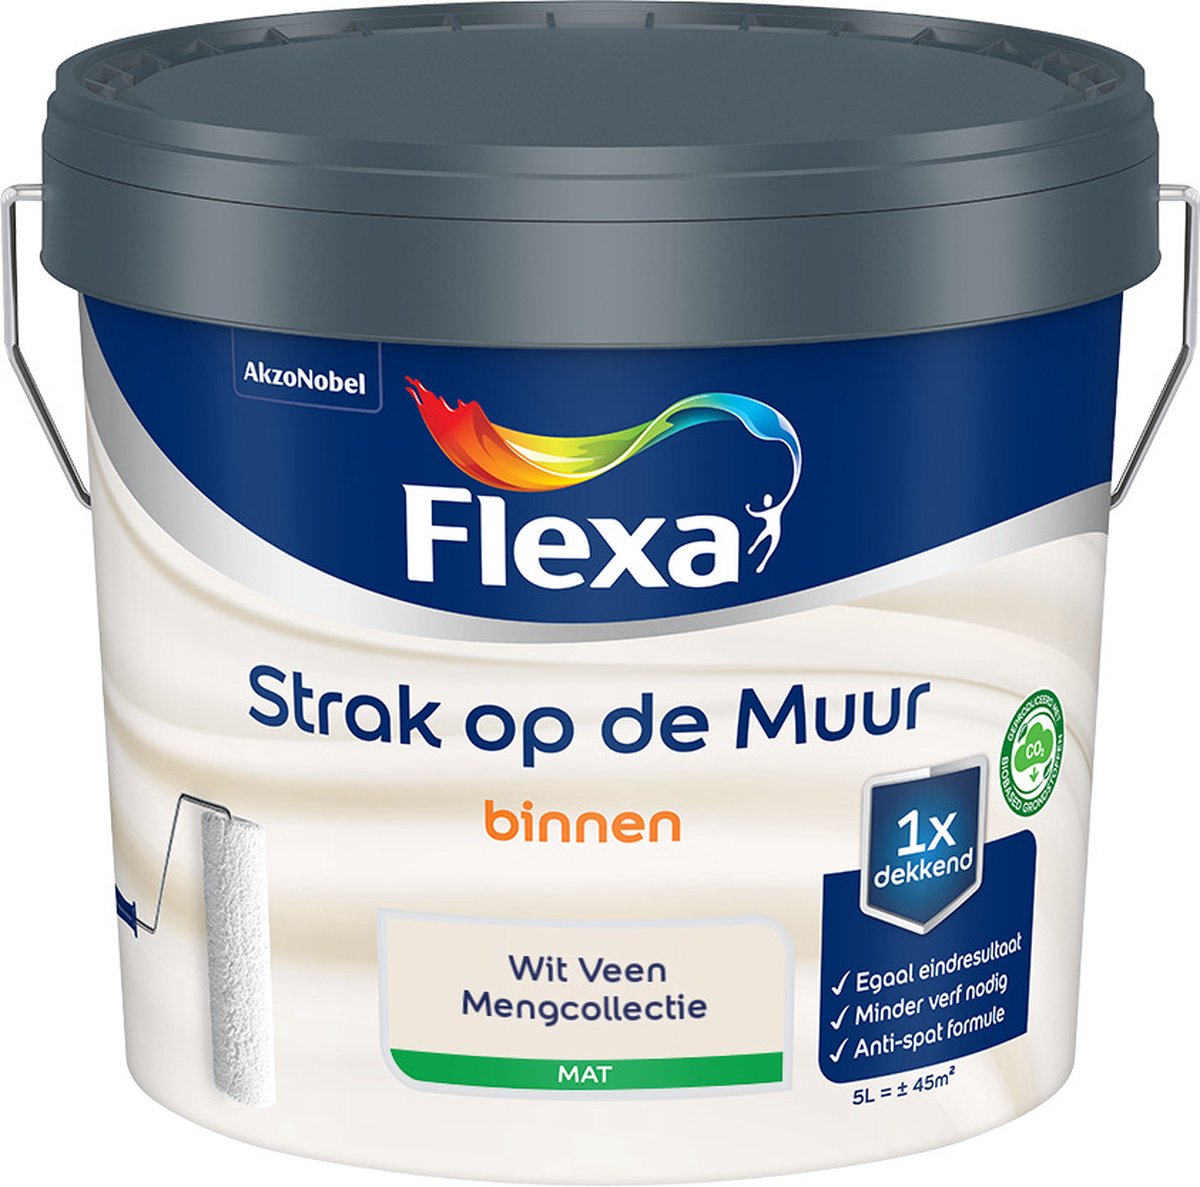 Flexa Strak op de muur - Muurverf - Mengcollectie - Wit Veen - 5 Liter